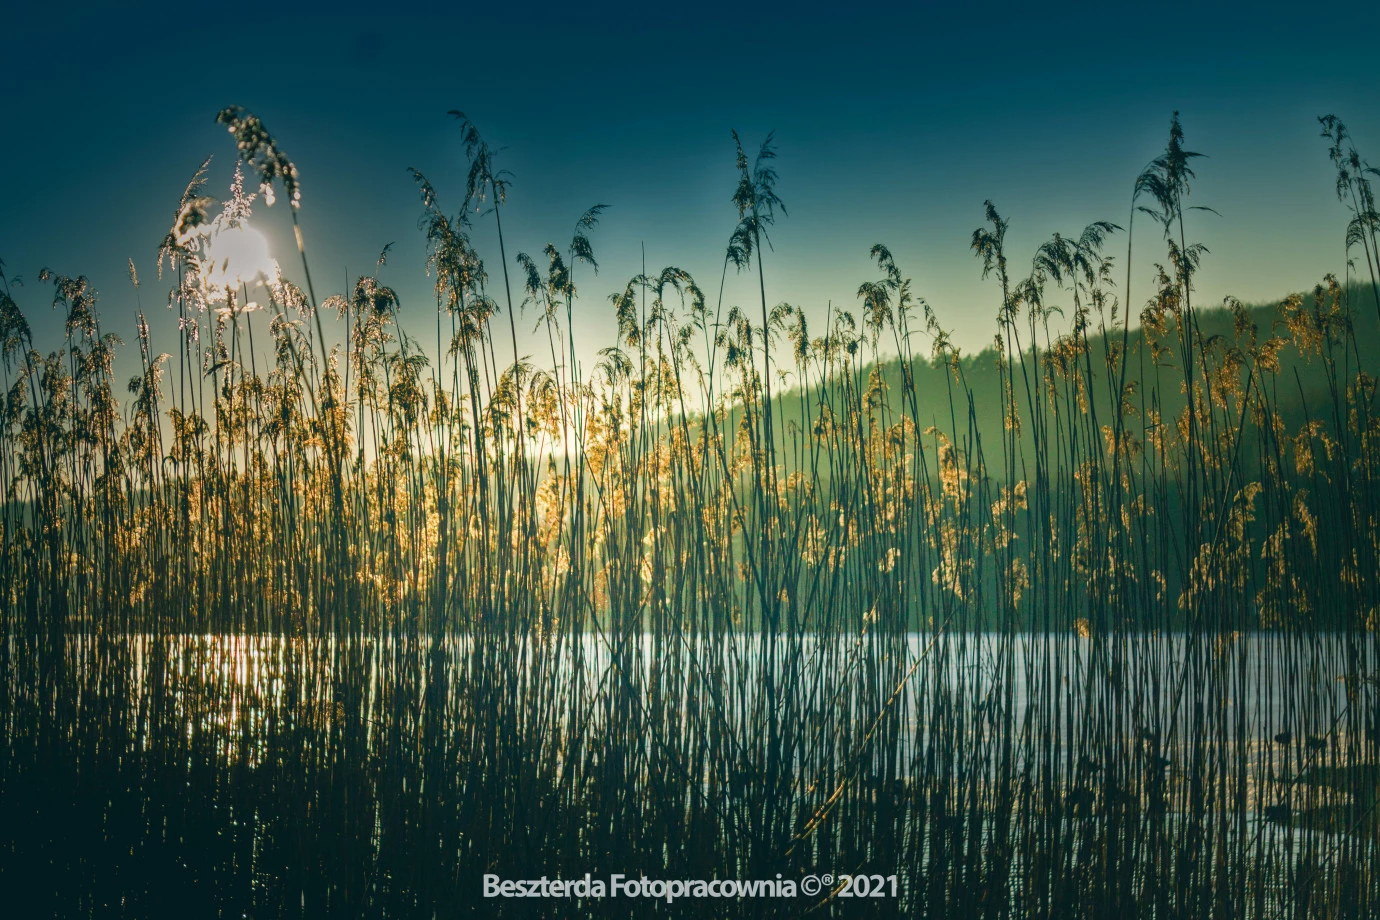 zdjęcia gdansk fotograf beszterda-fotopracownia portfolio zdjecia krajobrazu gory mazury